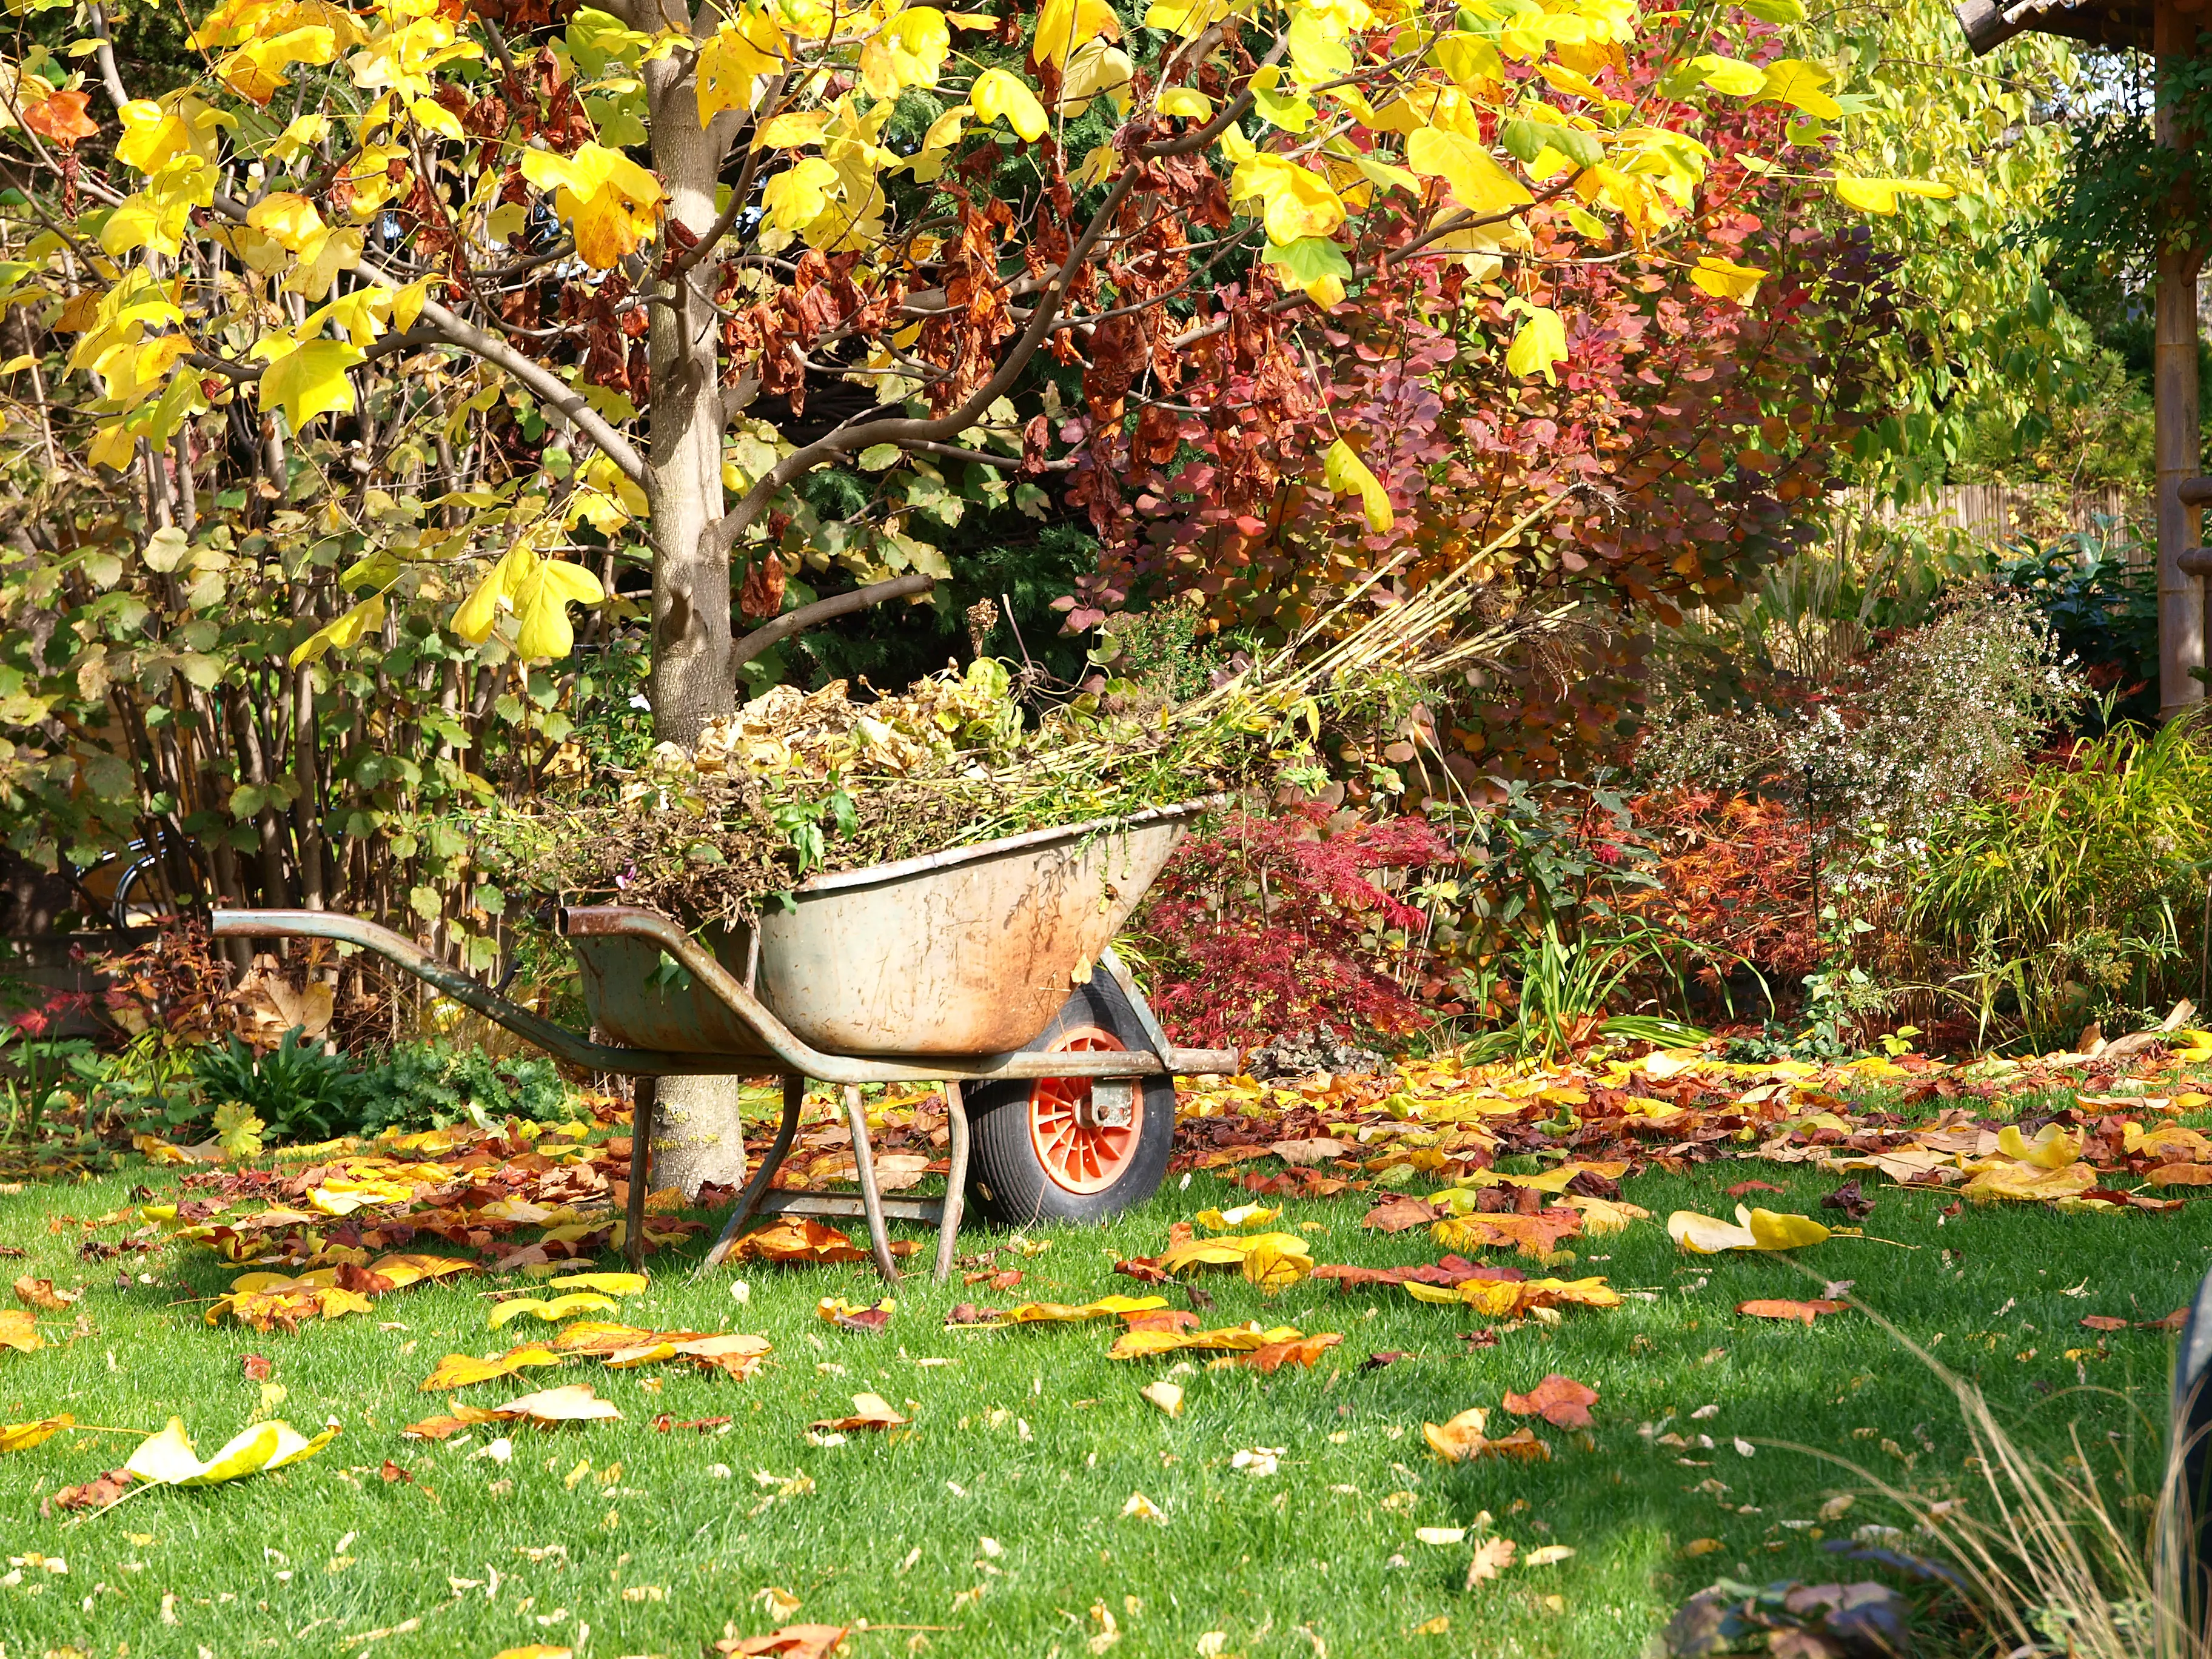 Gartenabfaelle und Herbstschnitt einfach entsorgen